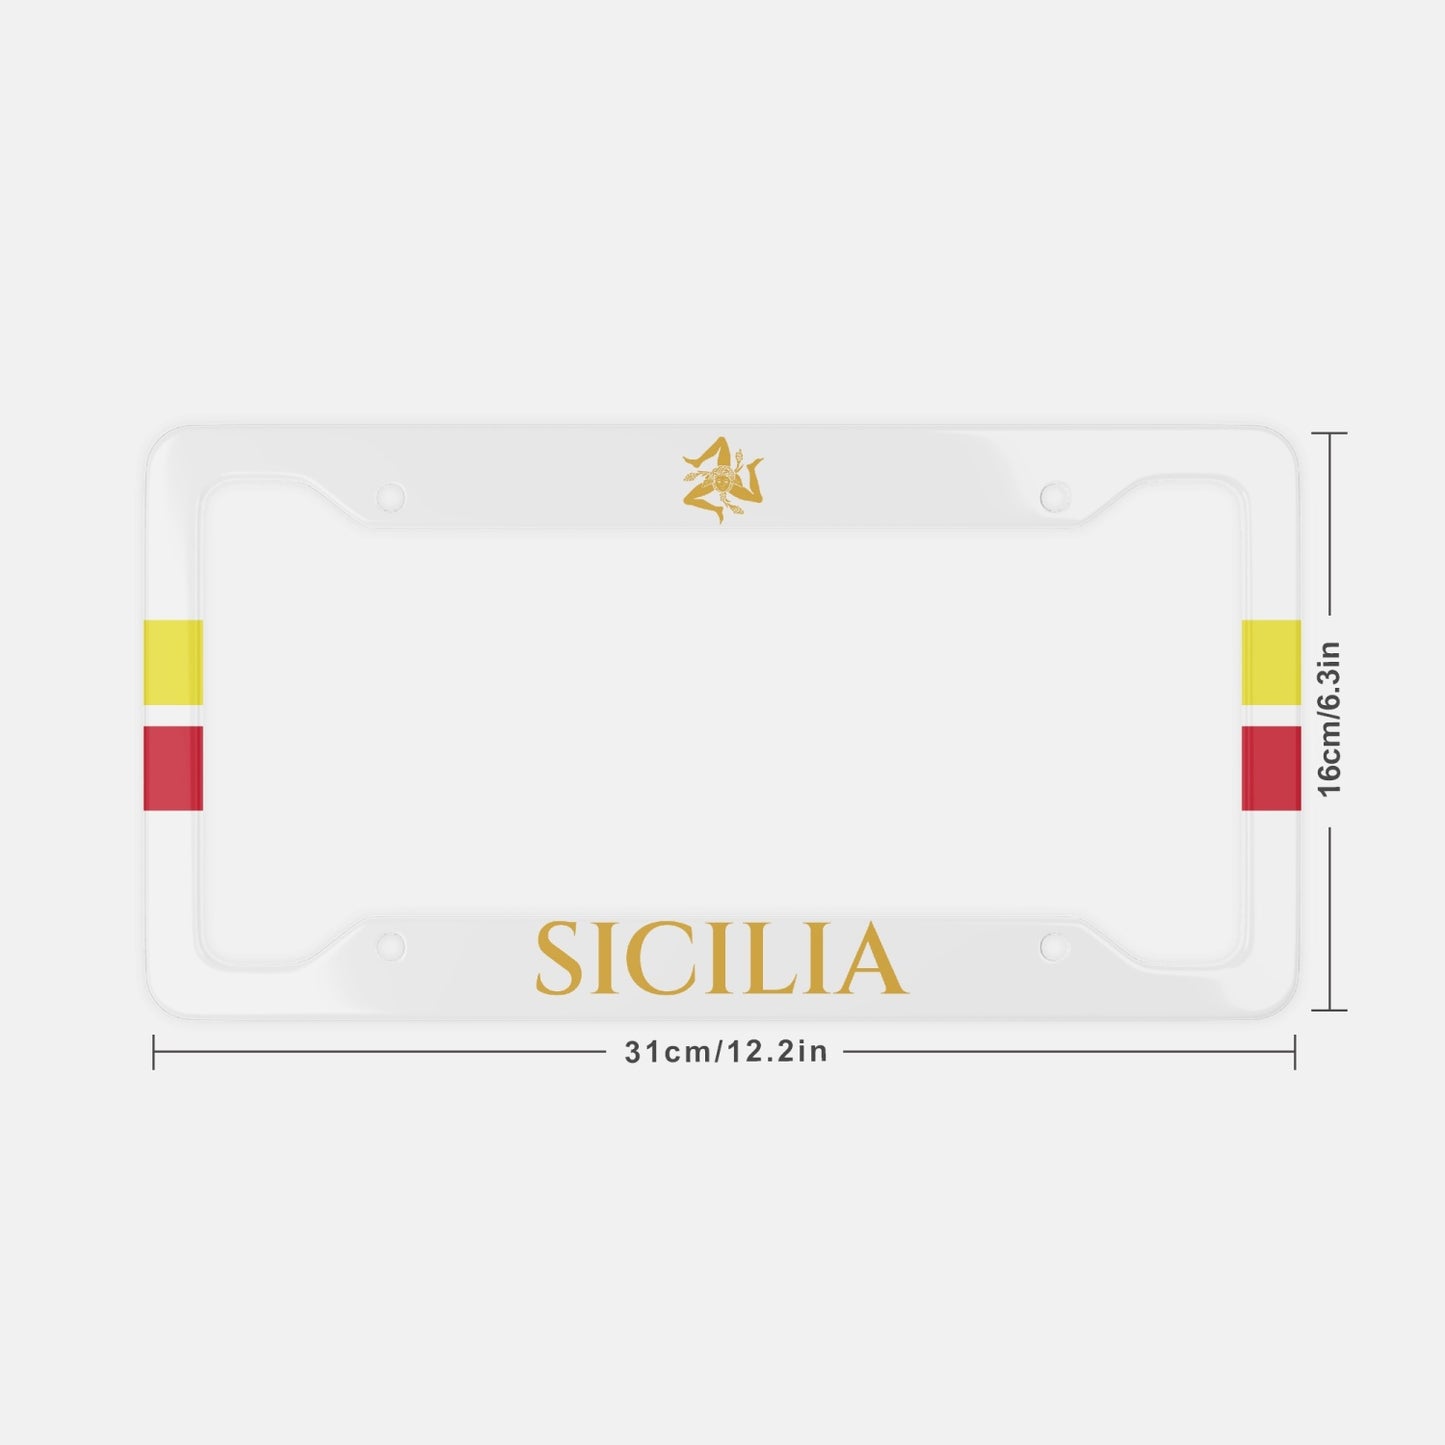 Sicily - License Plate Frame